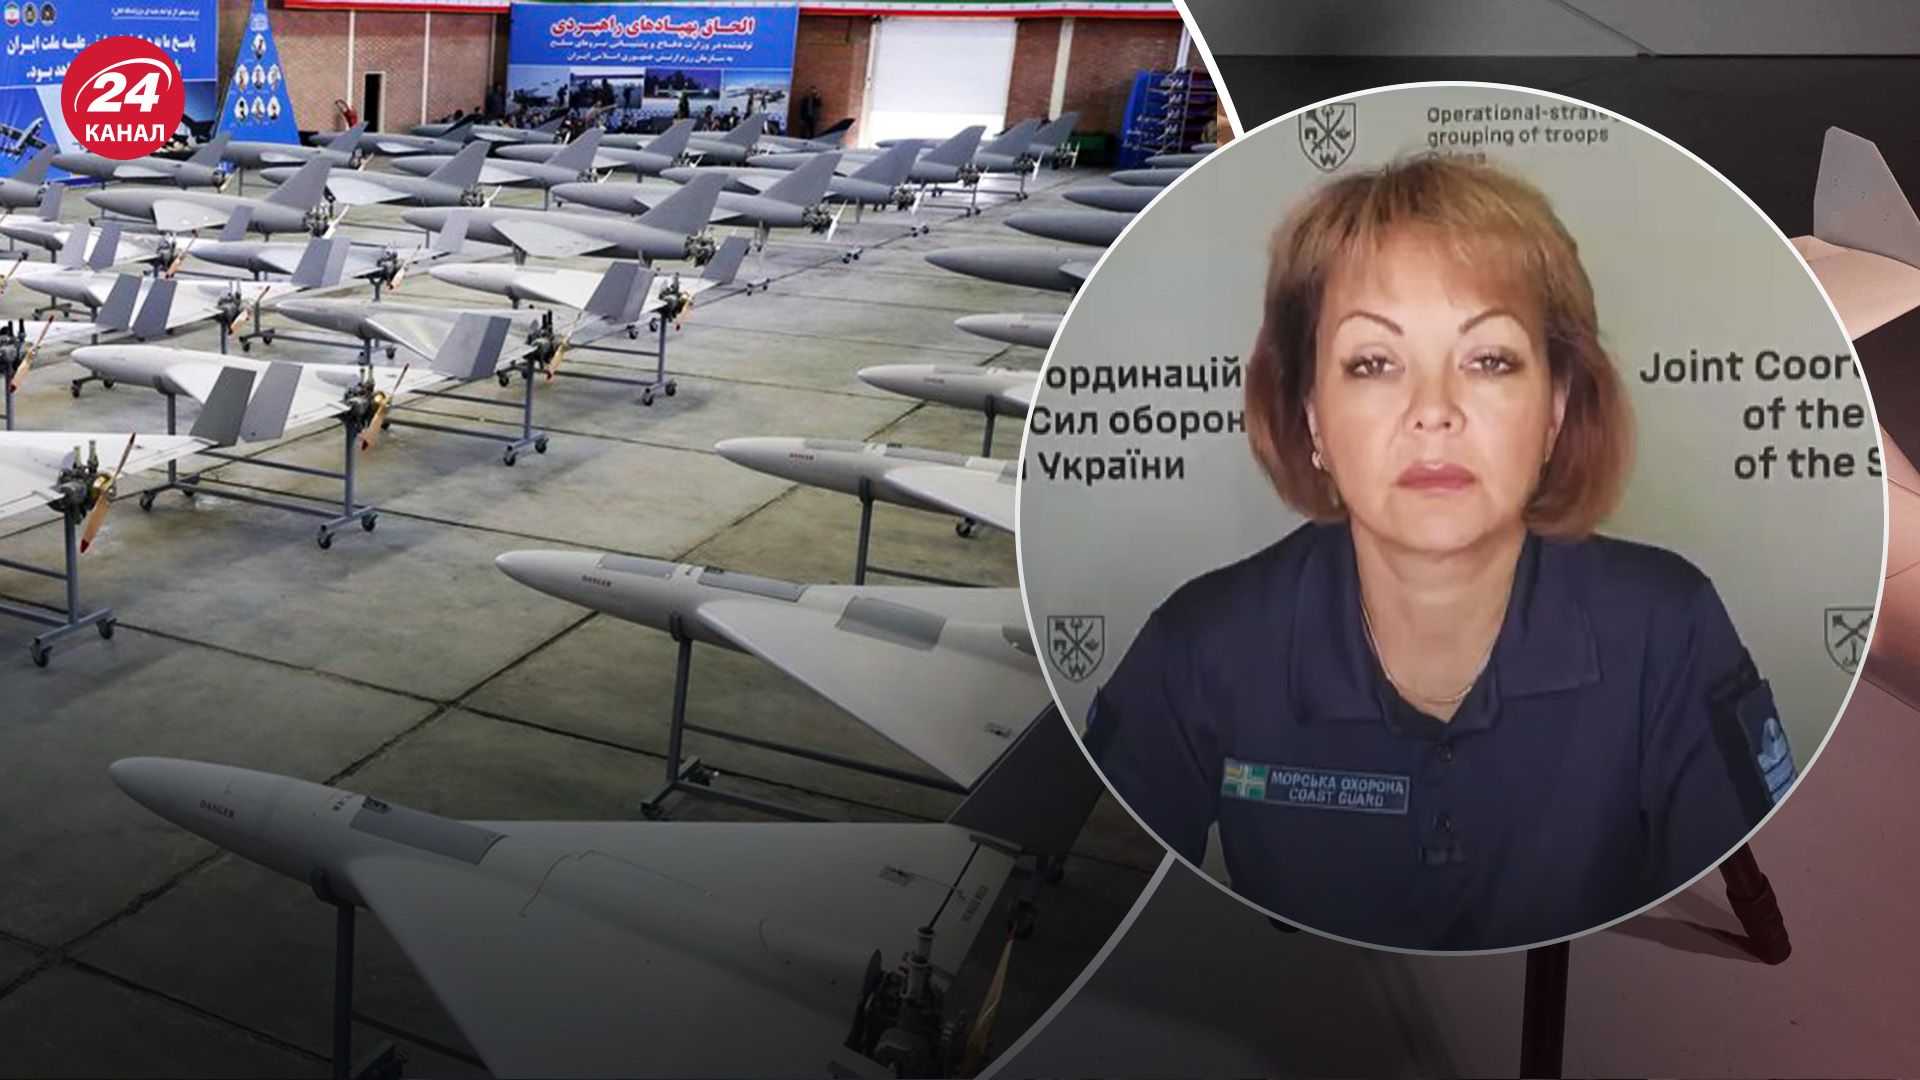 Как Россия кичится производством дронов - почему активизировались перевозки из Татарстана - 24 Канал